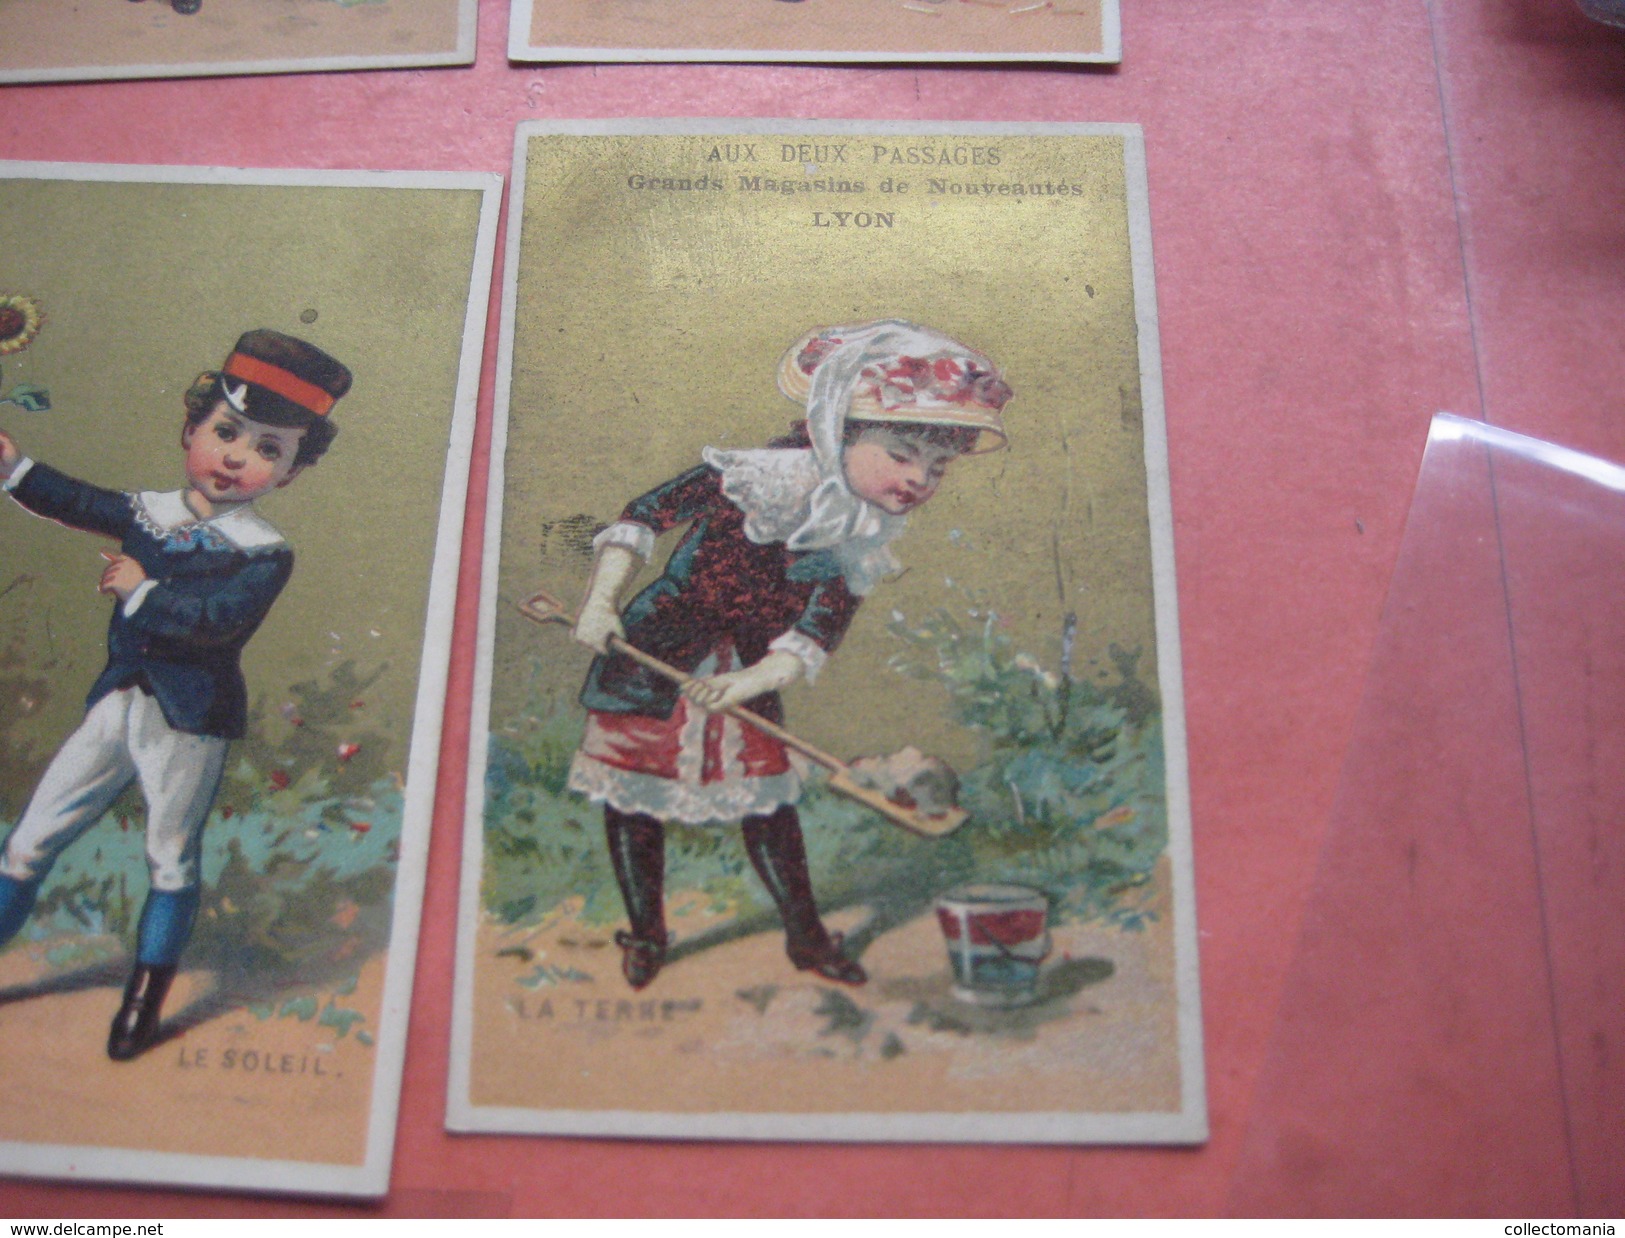 6 litho cartes trade cards compl. set CR 1-1-4 impr printer Courbe Rouzet PUB c1880 -  S. Cahen  à GRENOBLE & Lyon